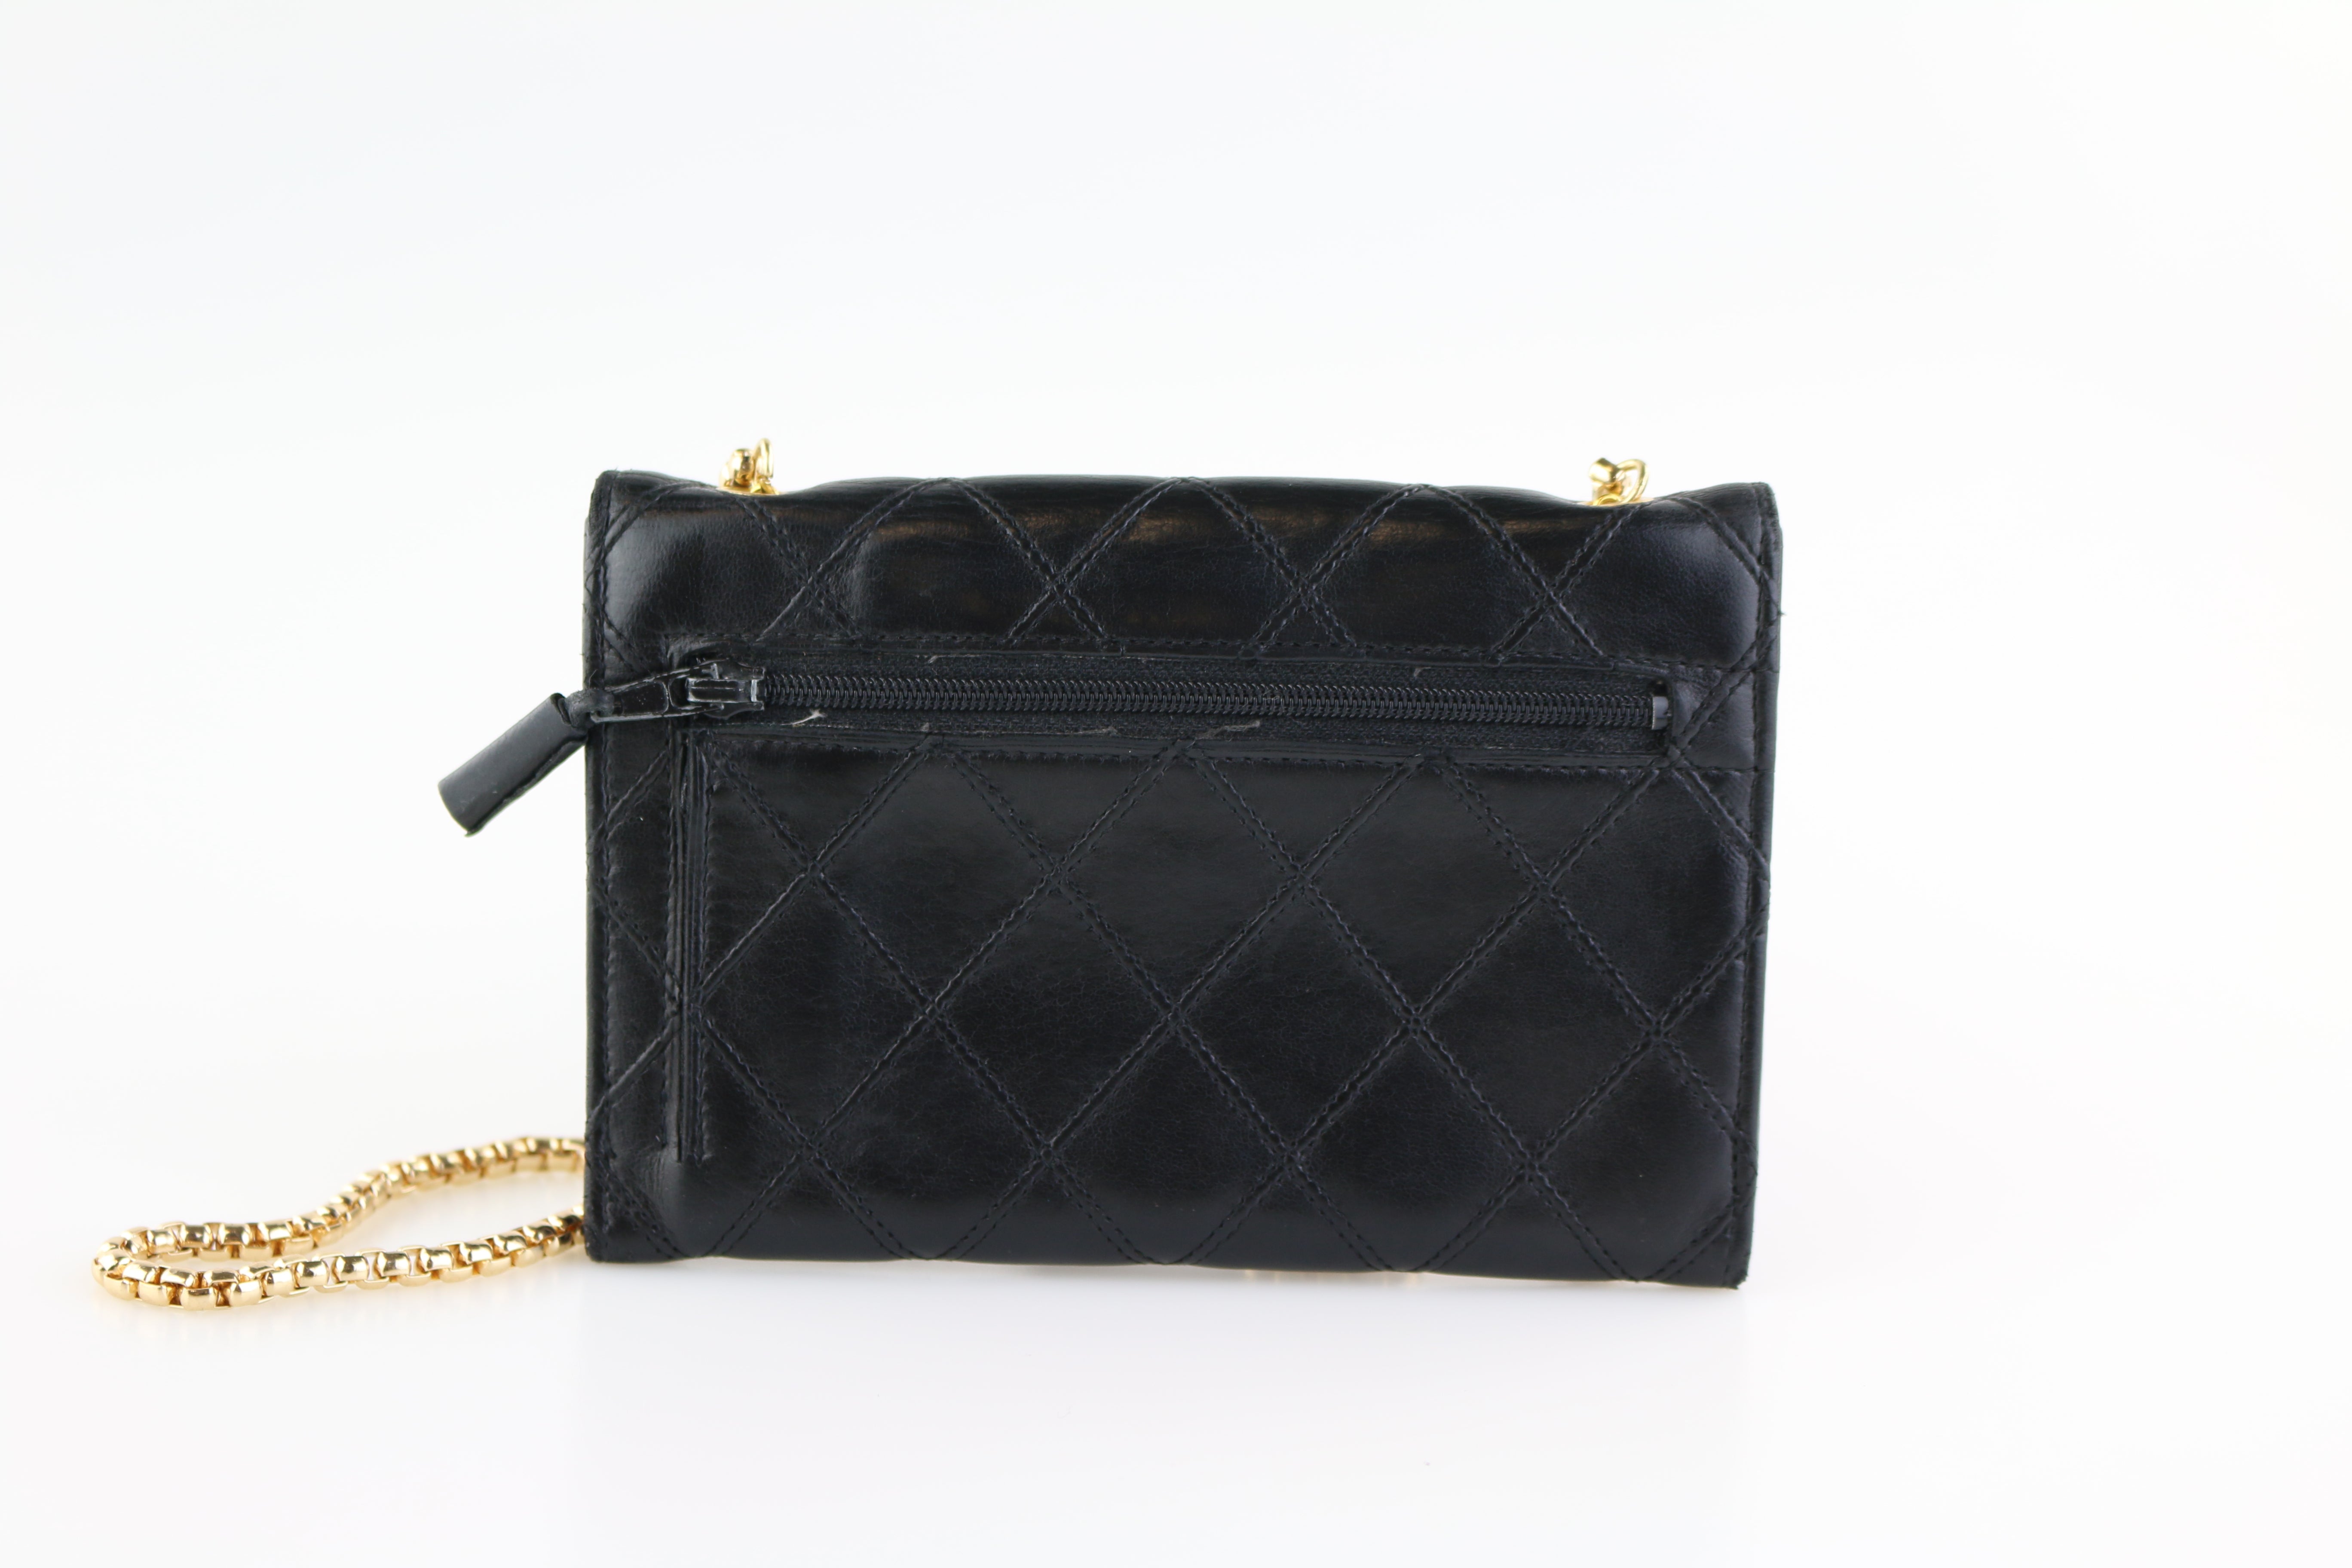 Chanel Tassel Bag - 67 For Sale on 1stDibs